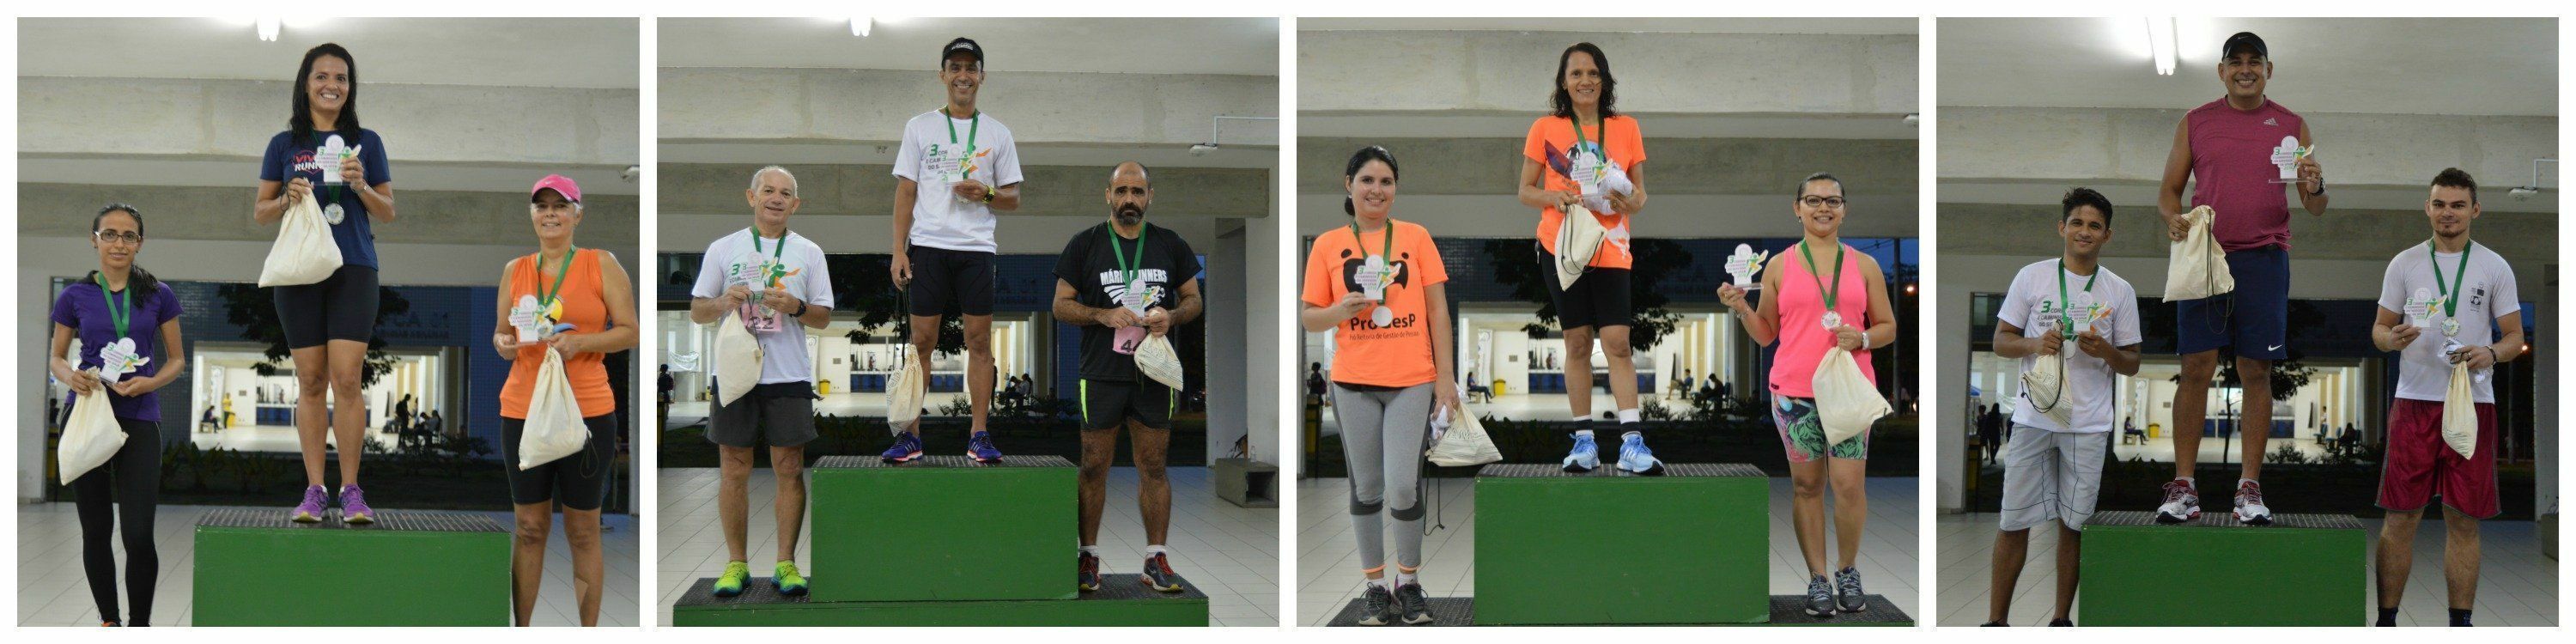 Os primeiros colocados em cada categoria, da esquerda para a direita: feminino e masculino de 7 km; e feminino e masculino de 3,5 km.